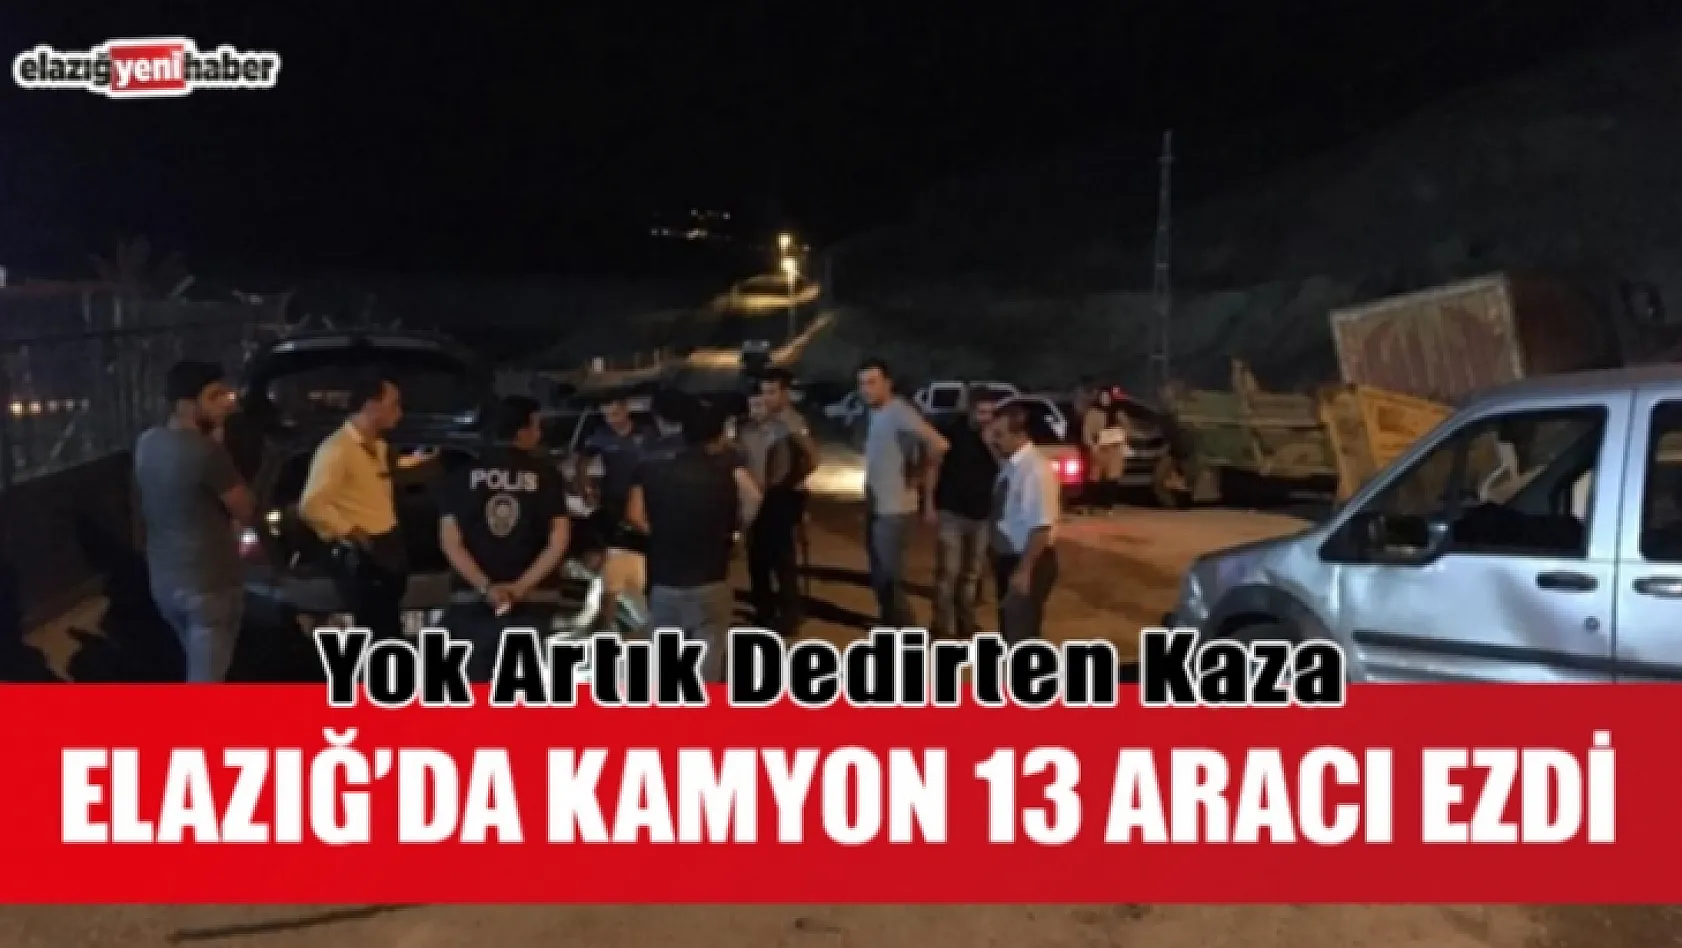 Elazığ'da Kamyon 13 Aracı Ezdi !